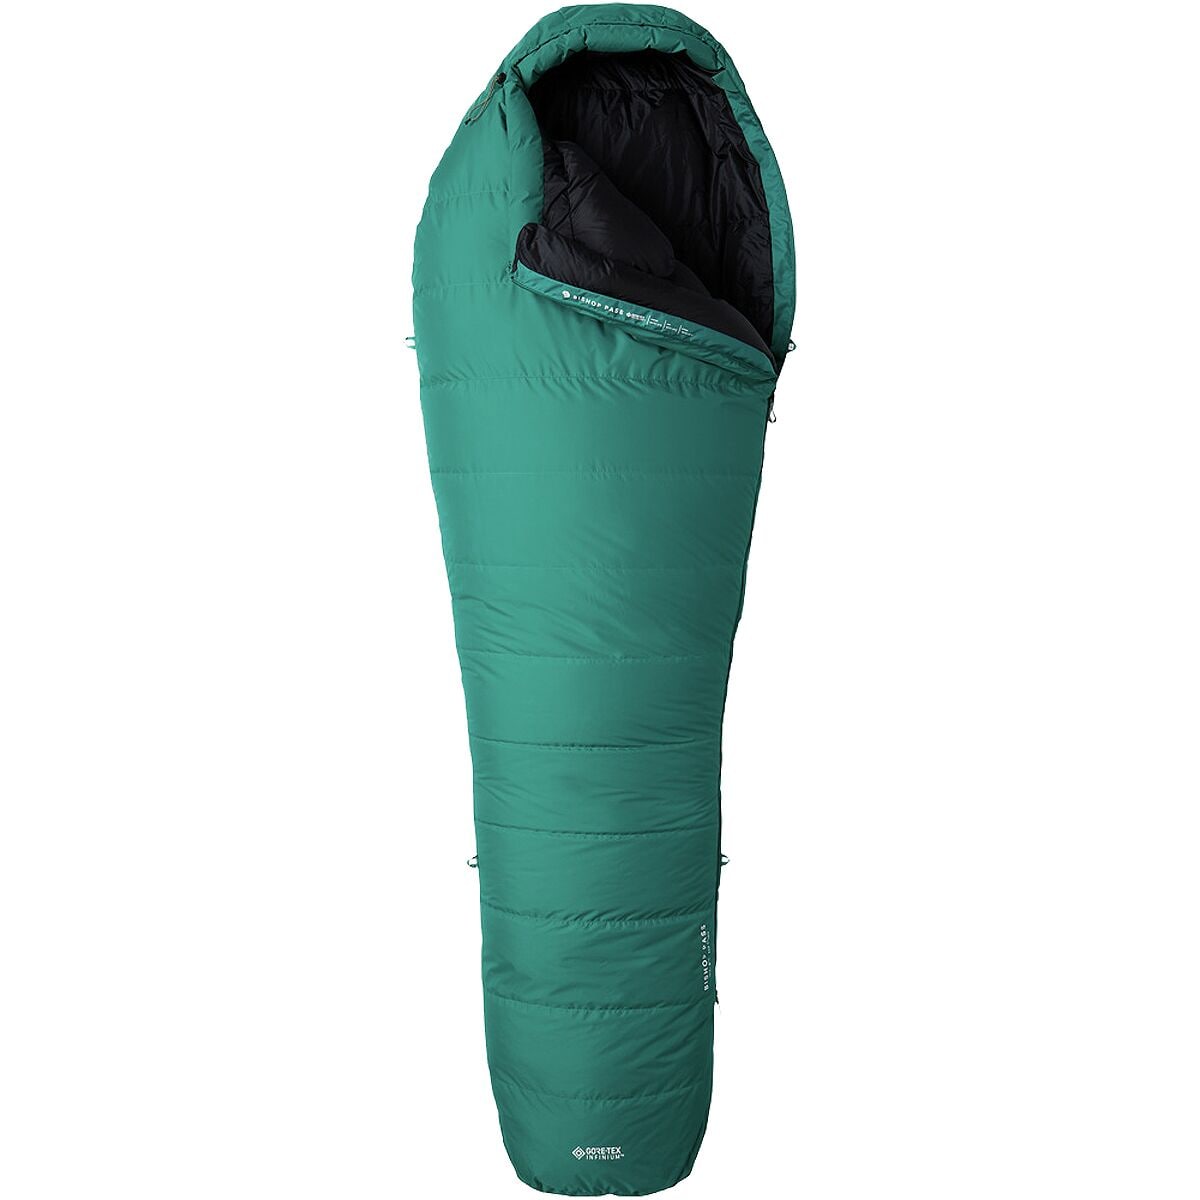 Mountain Hardwear Bishop Pass GORE-TEX Sleeping Bag: 15F Down